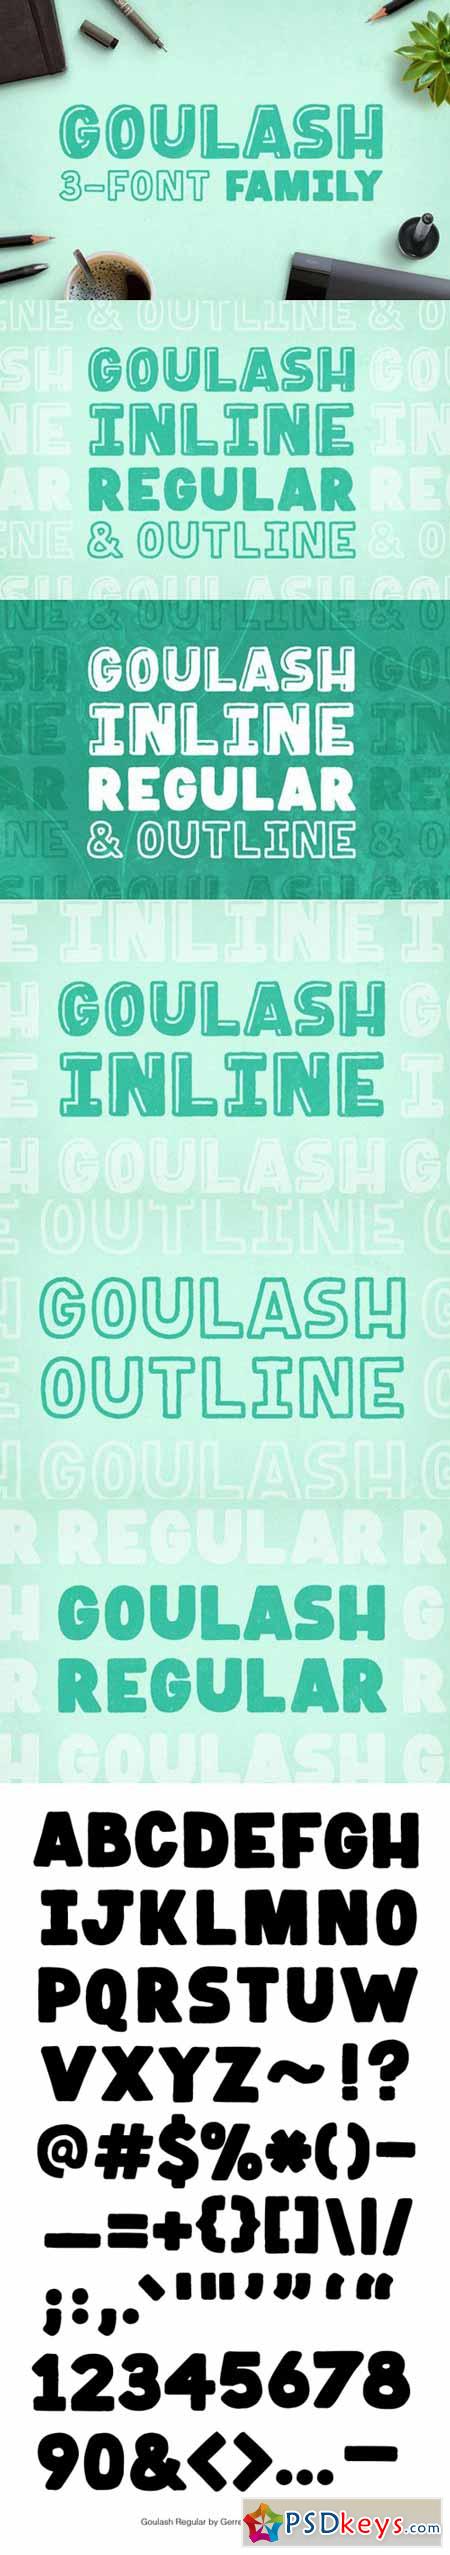 Goulash 3-Font Family 528238